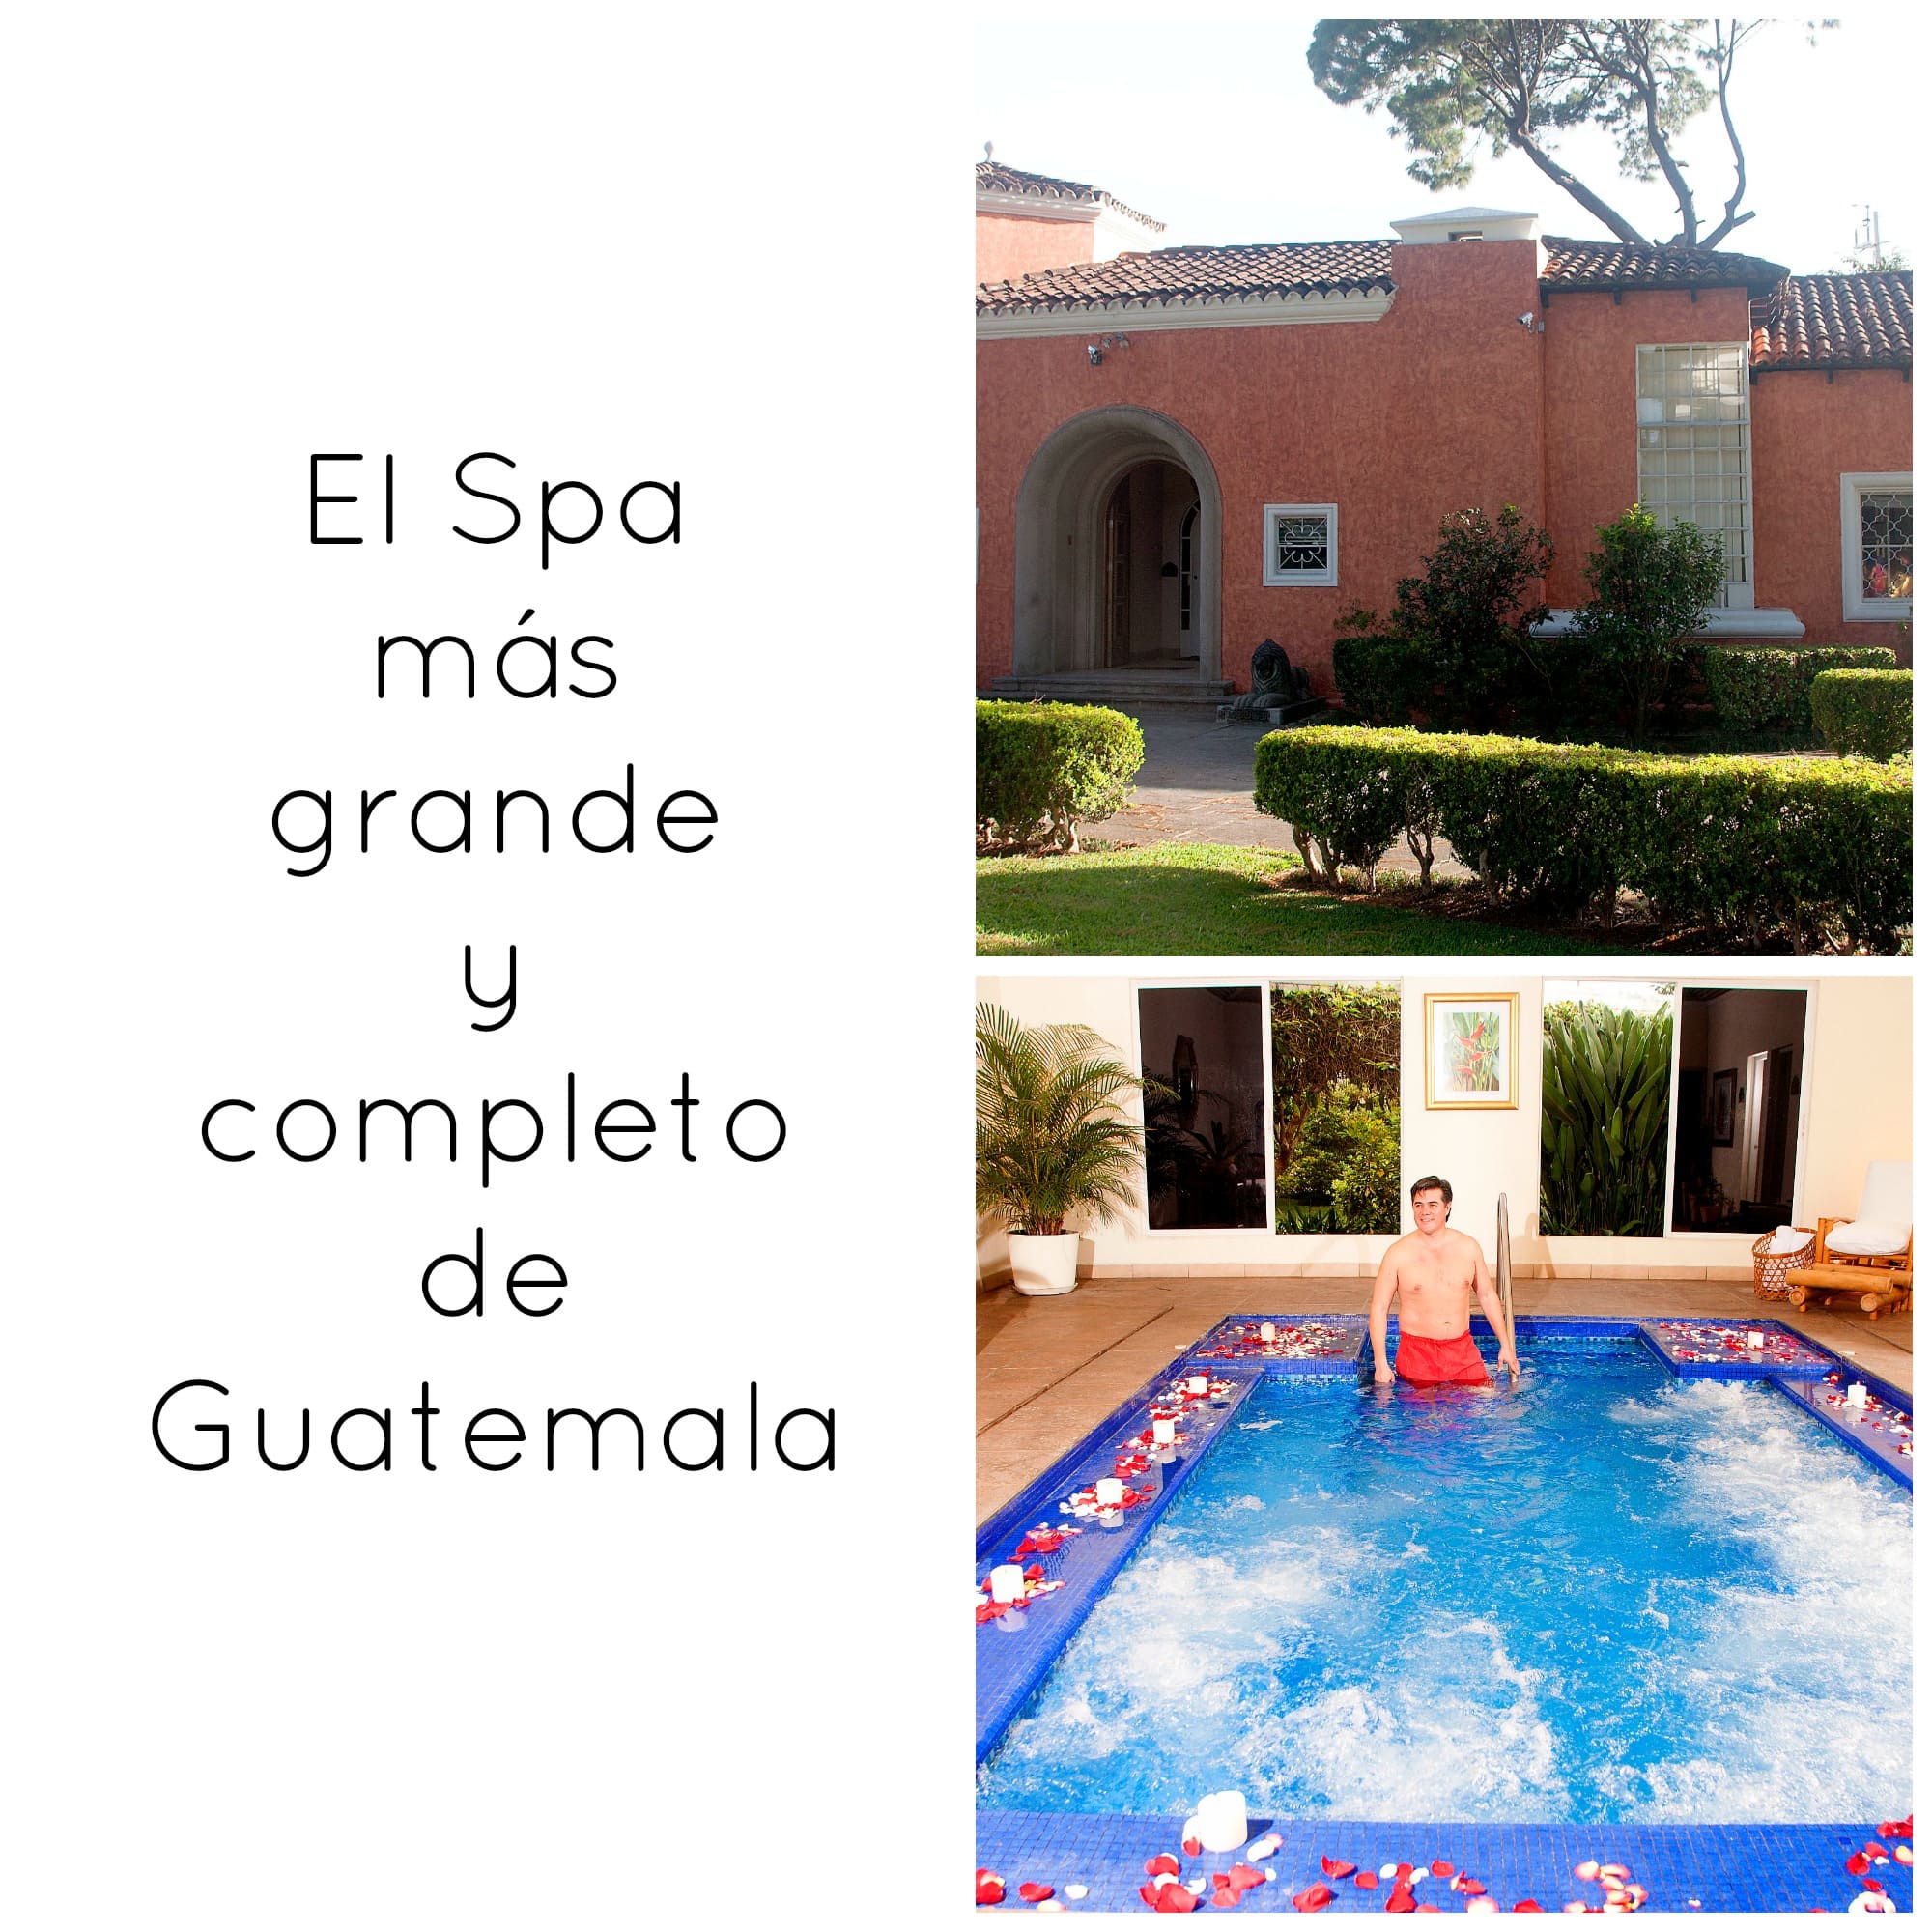 Le Petit Spa, el mas grande y completo spa de Guatemala